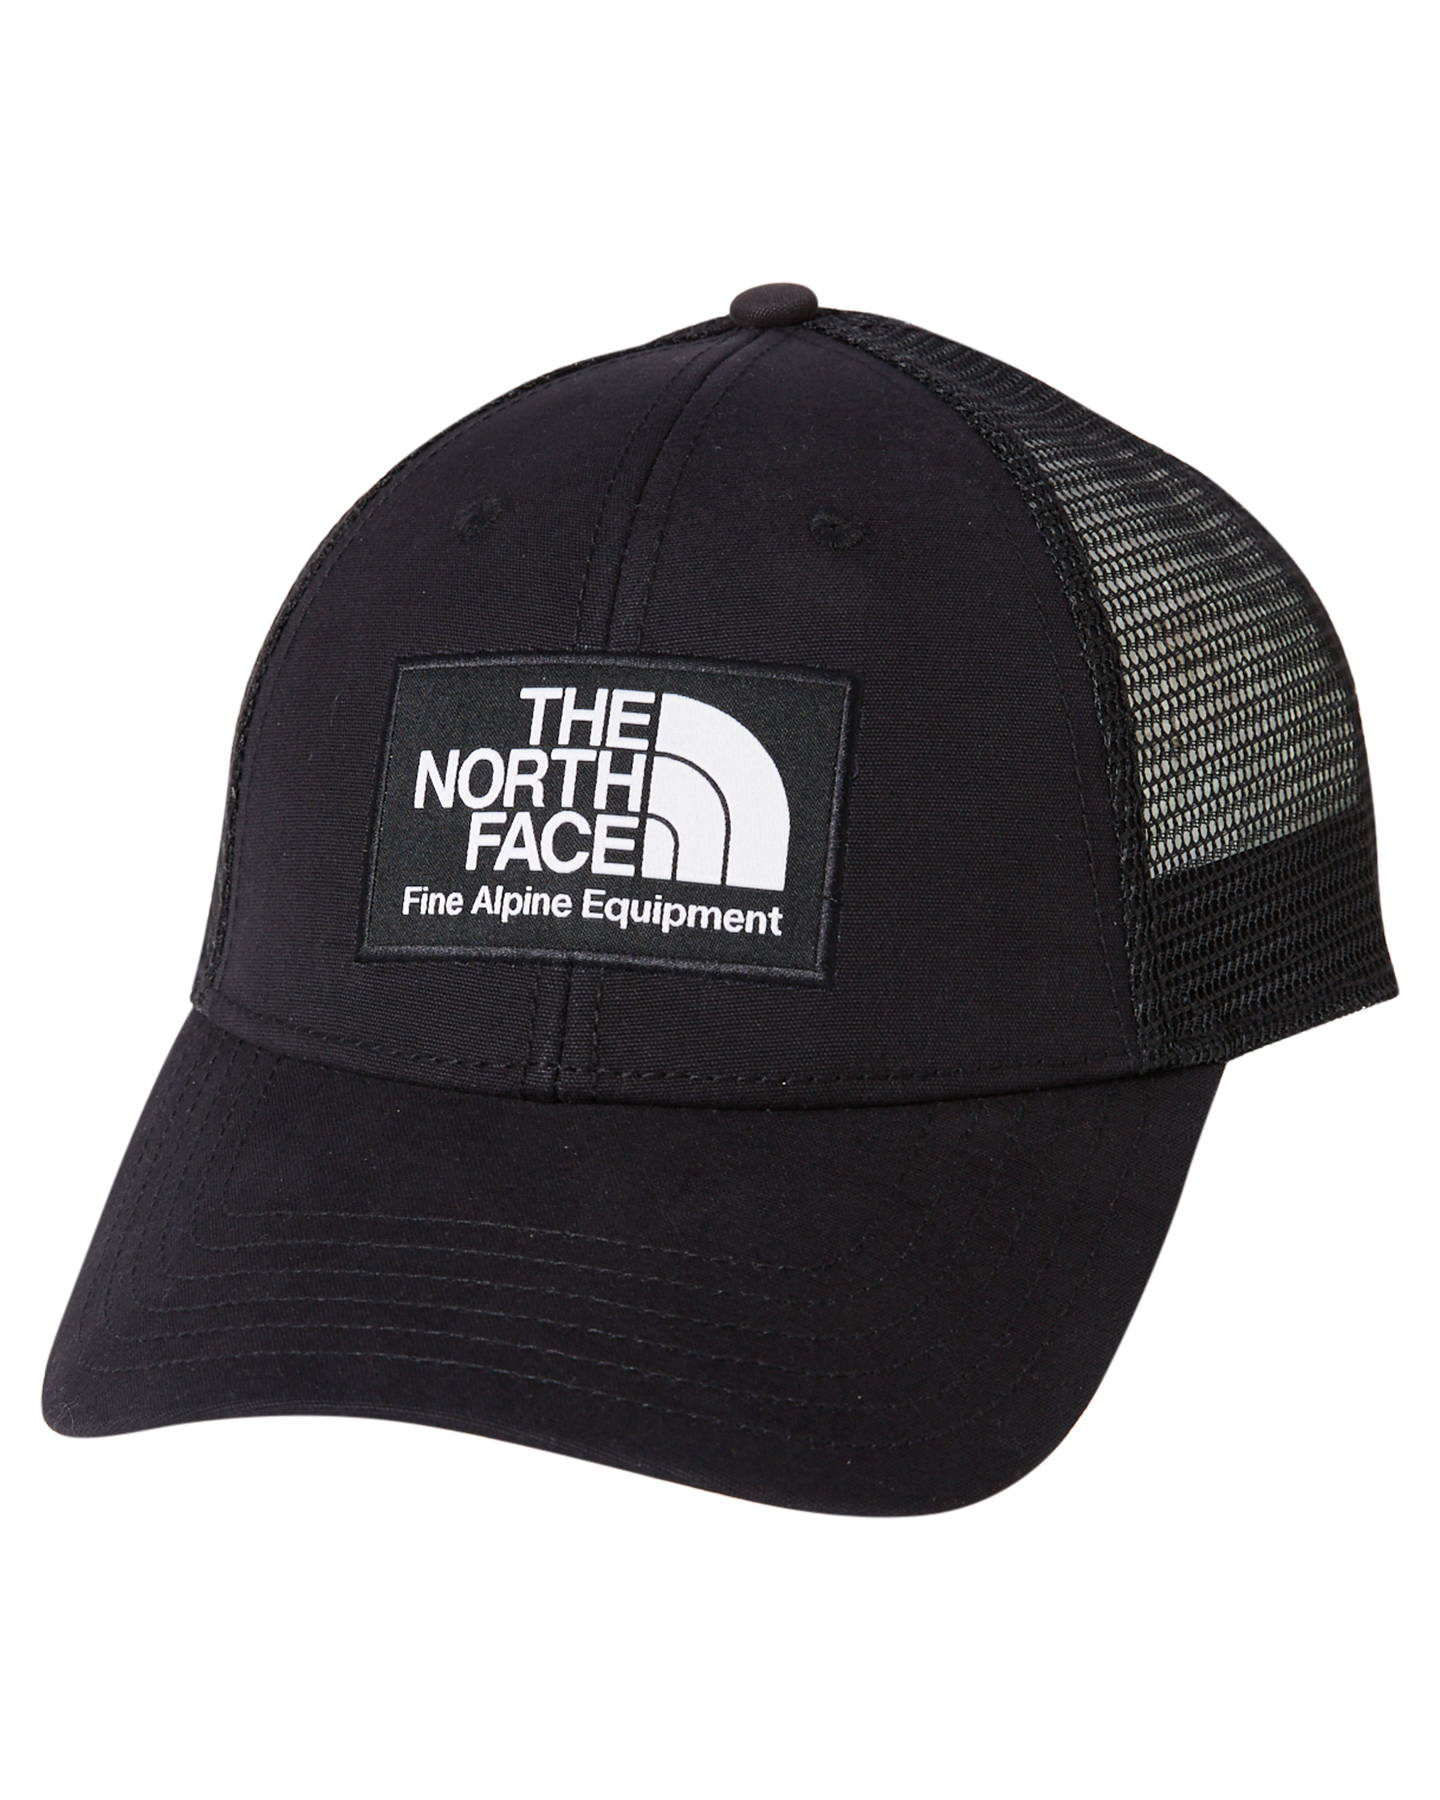 The North Face Mudder Trucker Cap - Black | SurfStitch